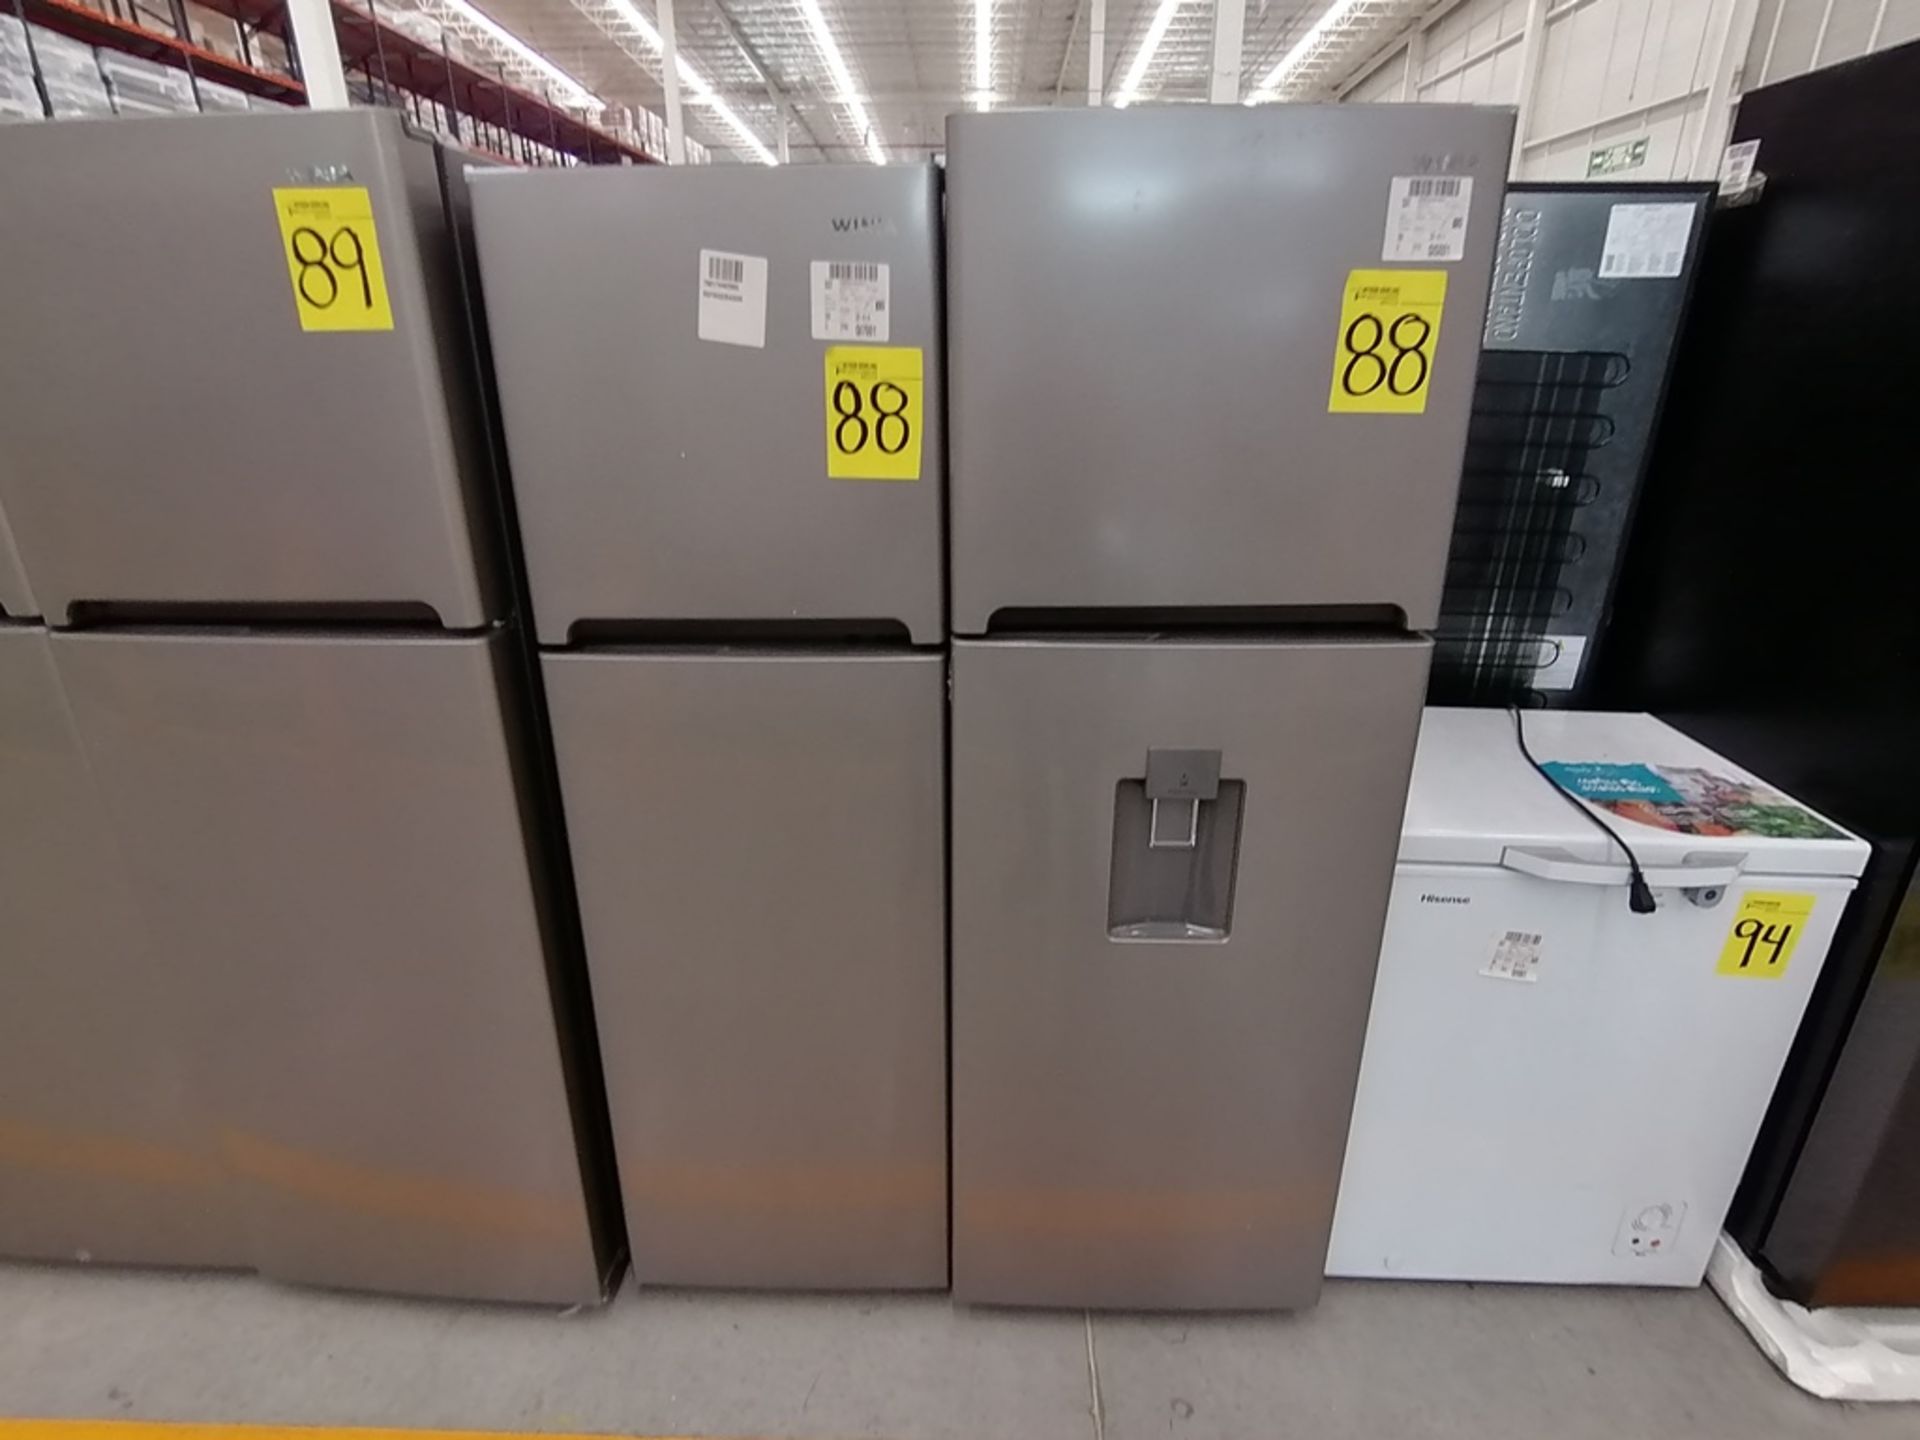 Lote de 2 refrigeradores incluye: 1 Refrigerador, Marca Winia, Modelo DFR25210GN, Serie MR219N11602 - Image 10 of 15